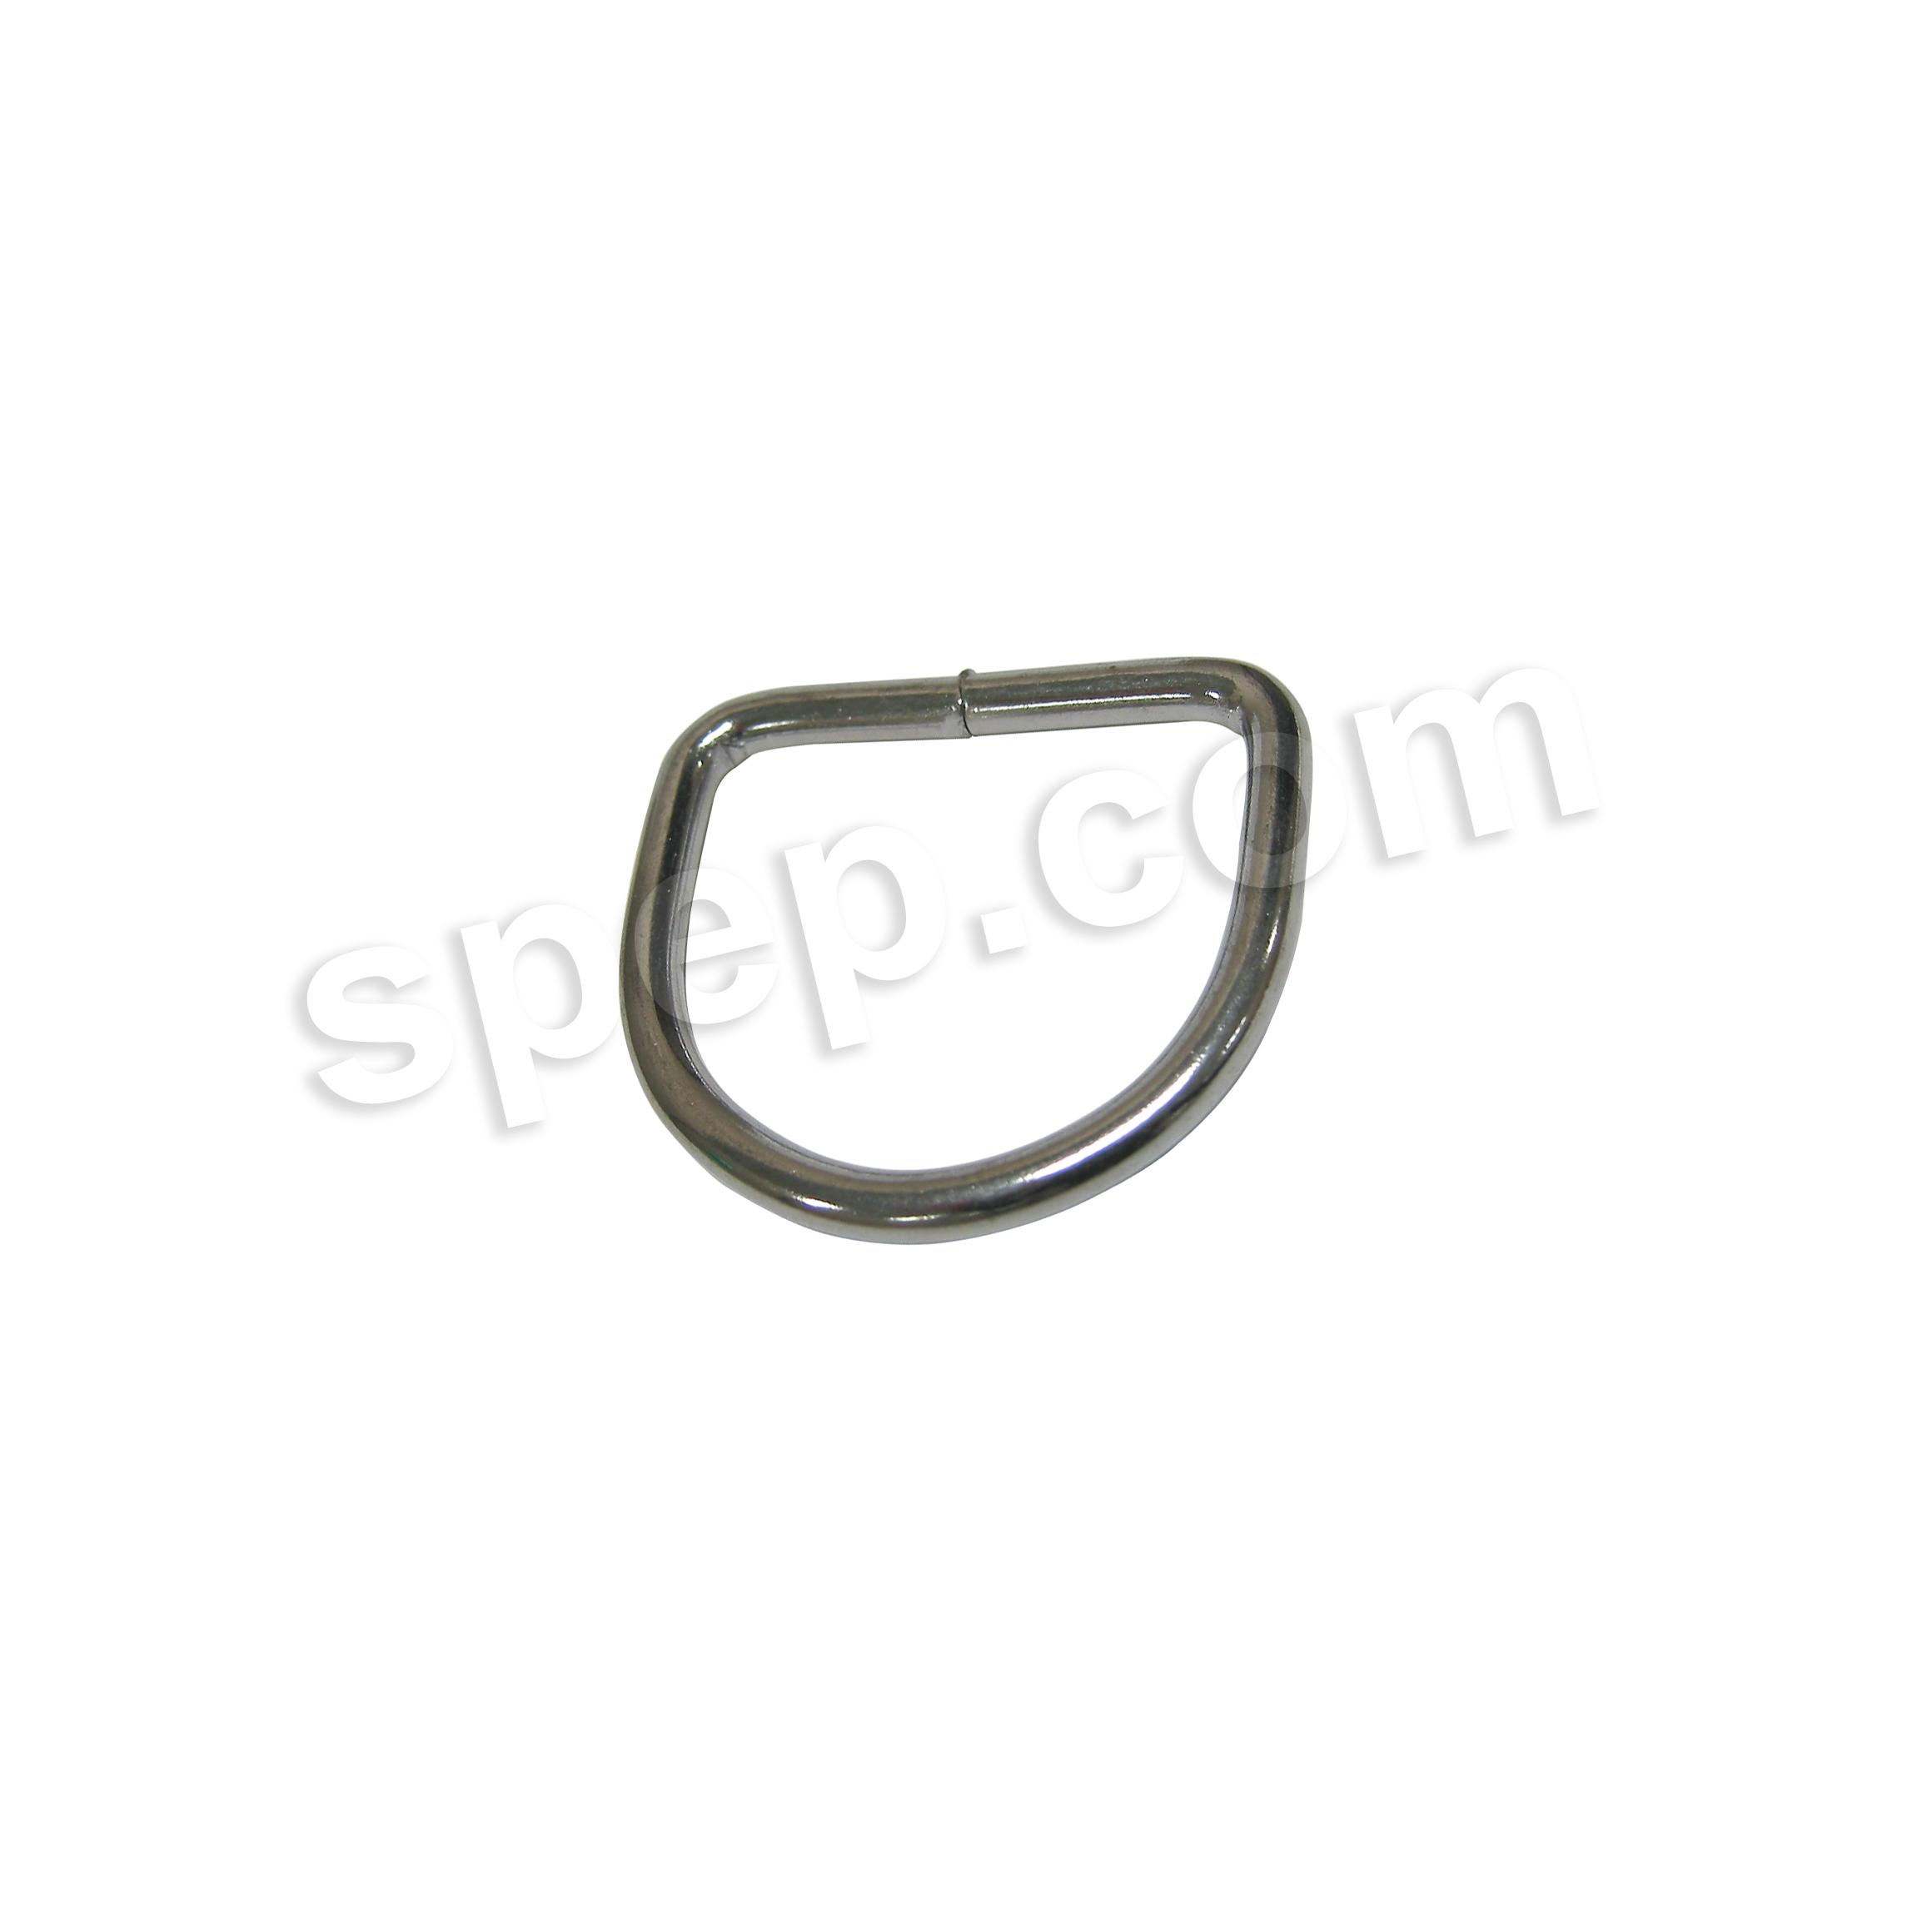 Standard Metal D-Rings in Nickel Plated Steel